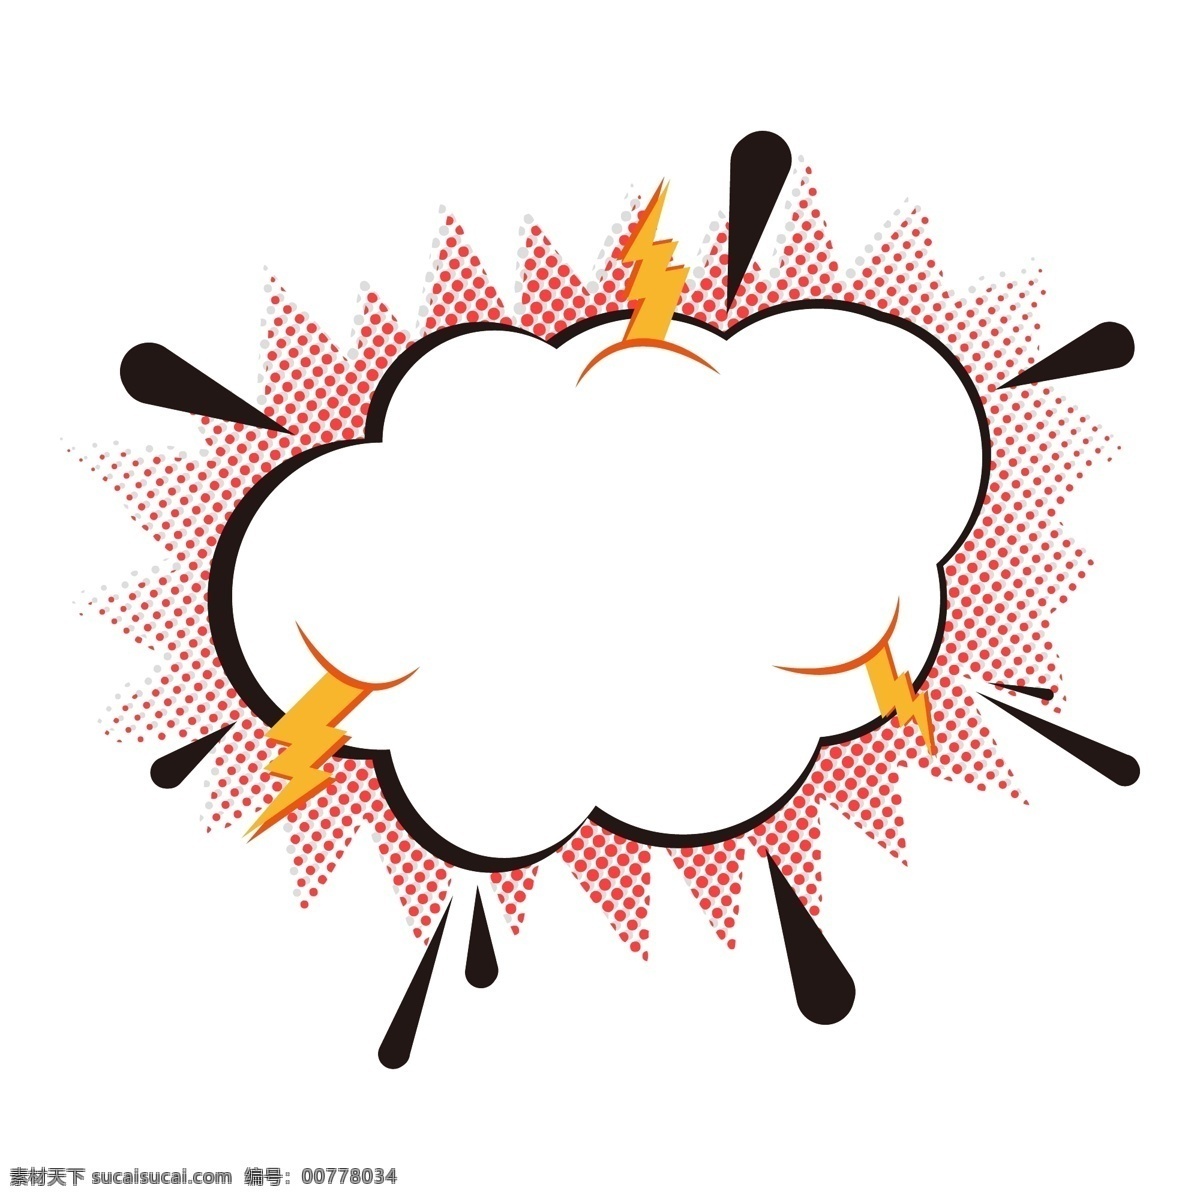 爆炸 云 会话 元素 对话框 矢量 矢量素材 闪电 爆炸云 网点 生气 发货